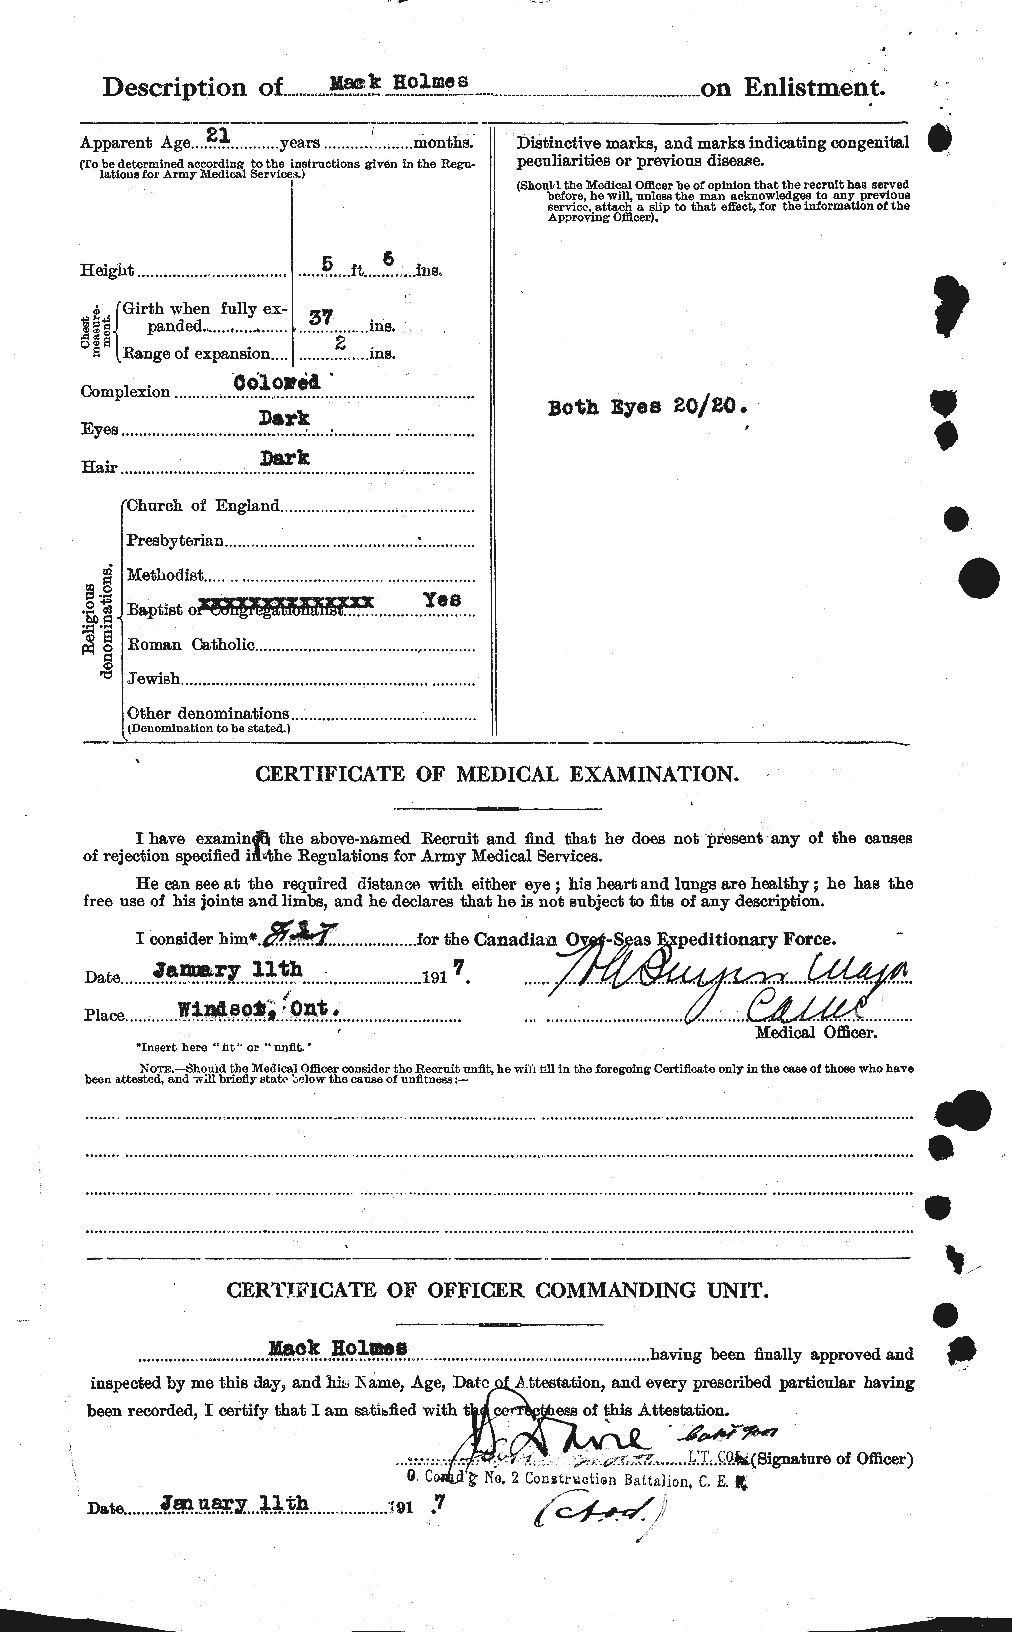 Dossiers du Personnel de la Première Guerre mondiale - CEC 401845b